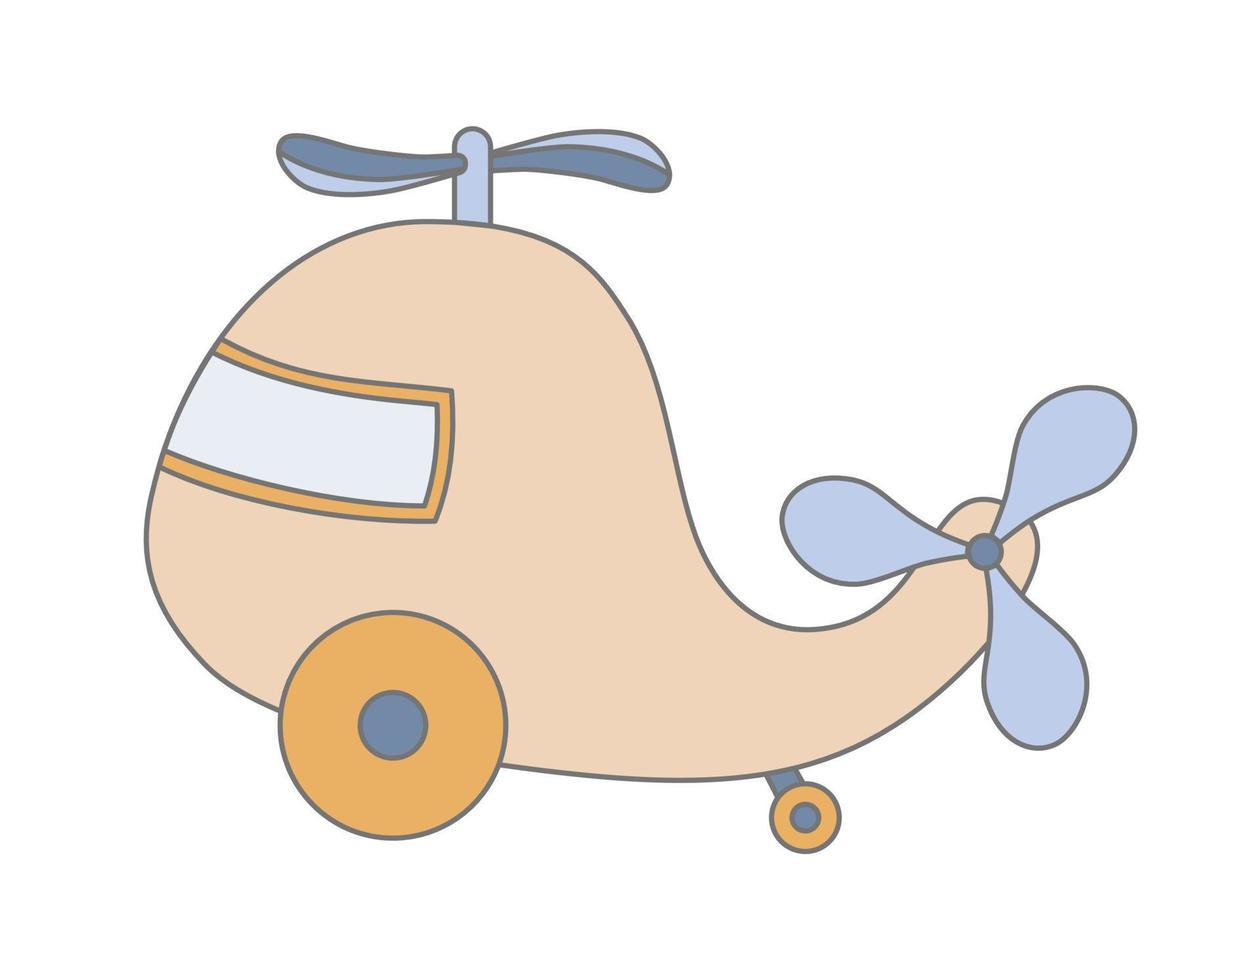 Hubschrauber aus Holz für Kinder. Flugzeug für Baby. vektor handgezeichnete illustration für eine glückliche kindheit auf weißem hintergrund. süße skizze des flugzeugs